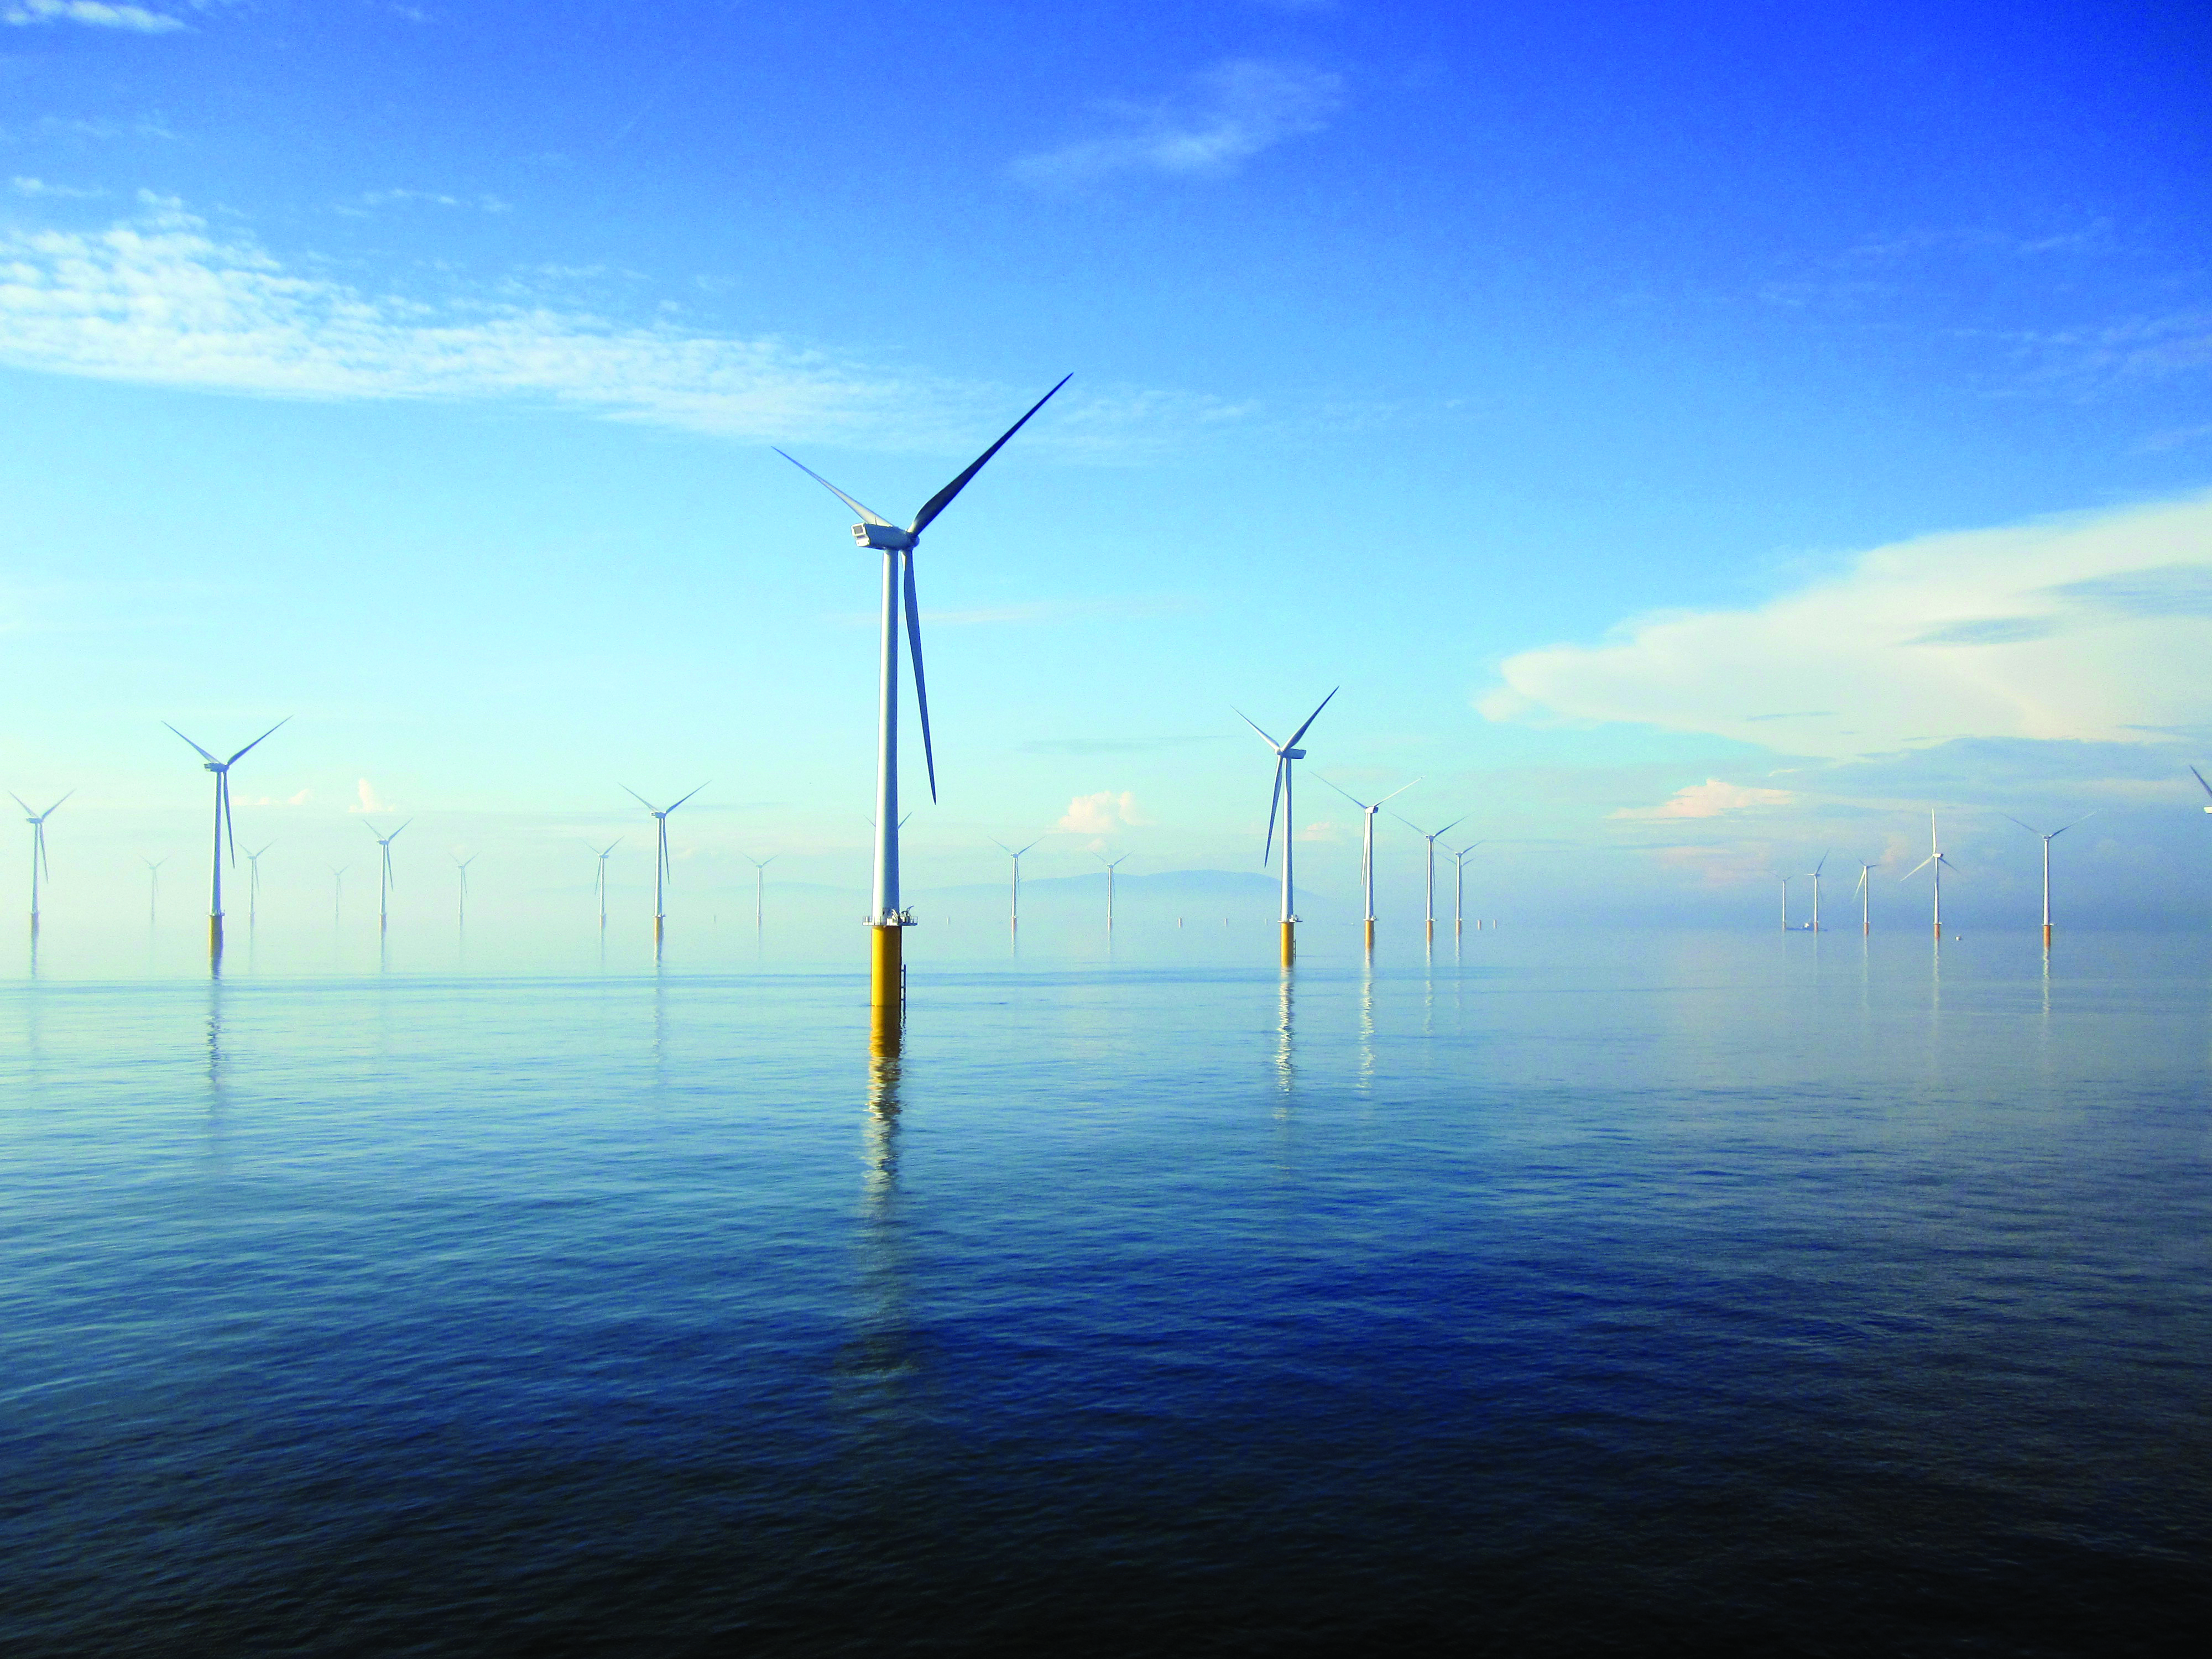 london-array-offshore-wind-farm